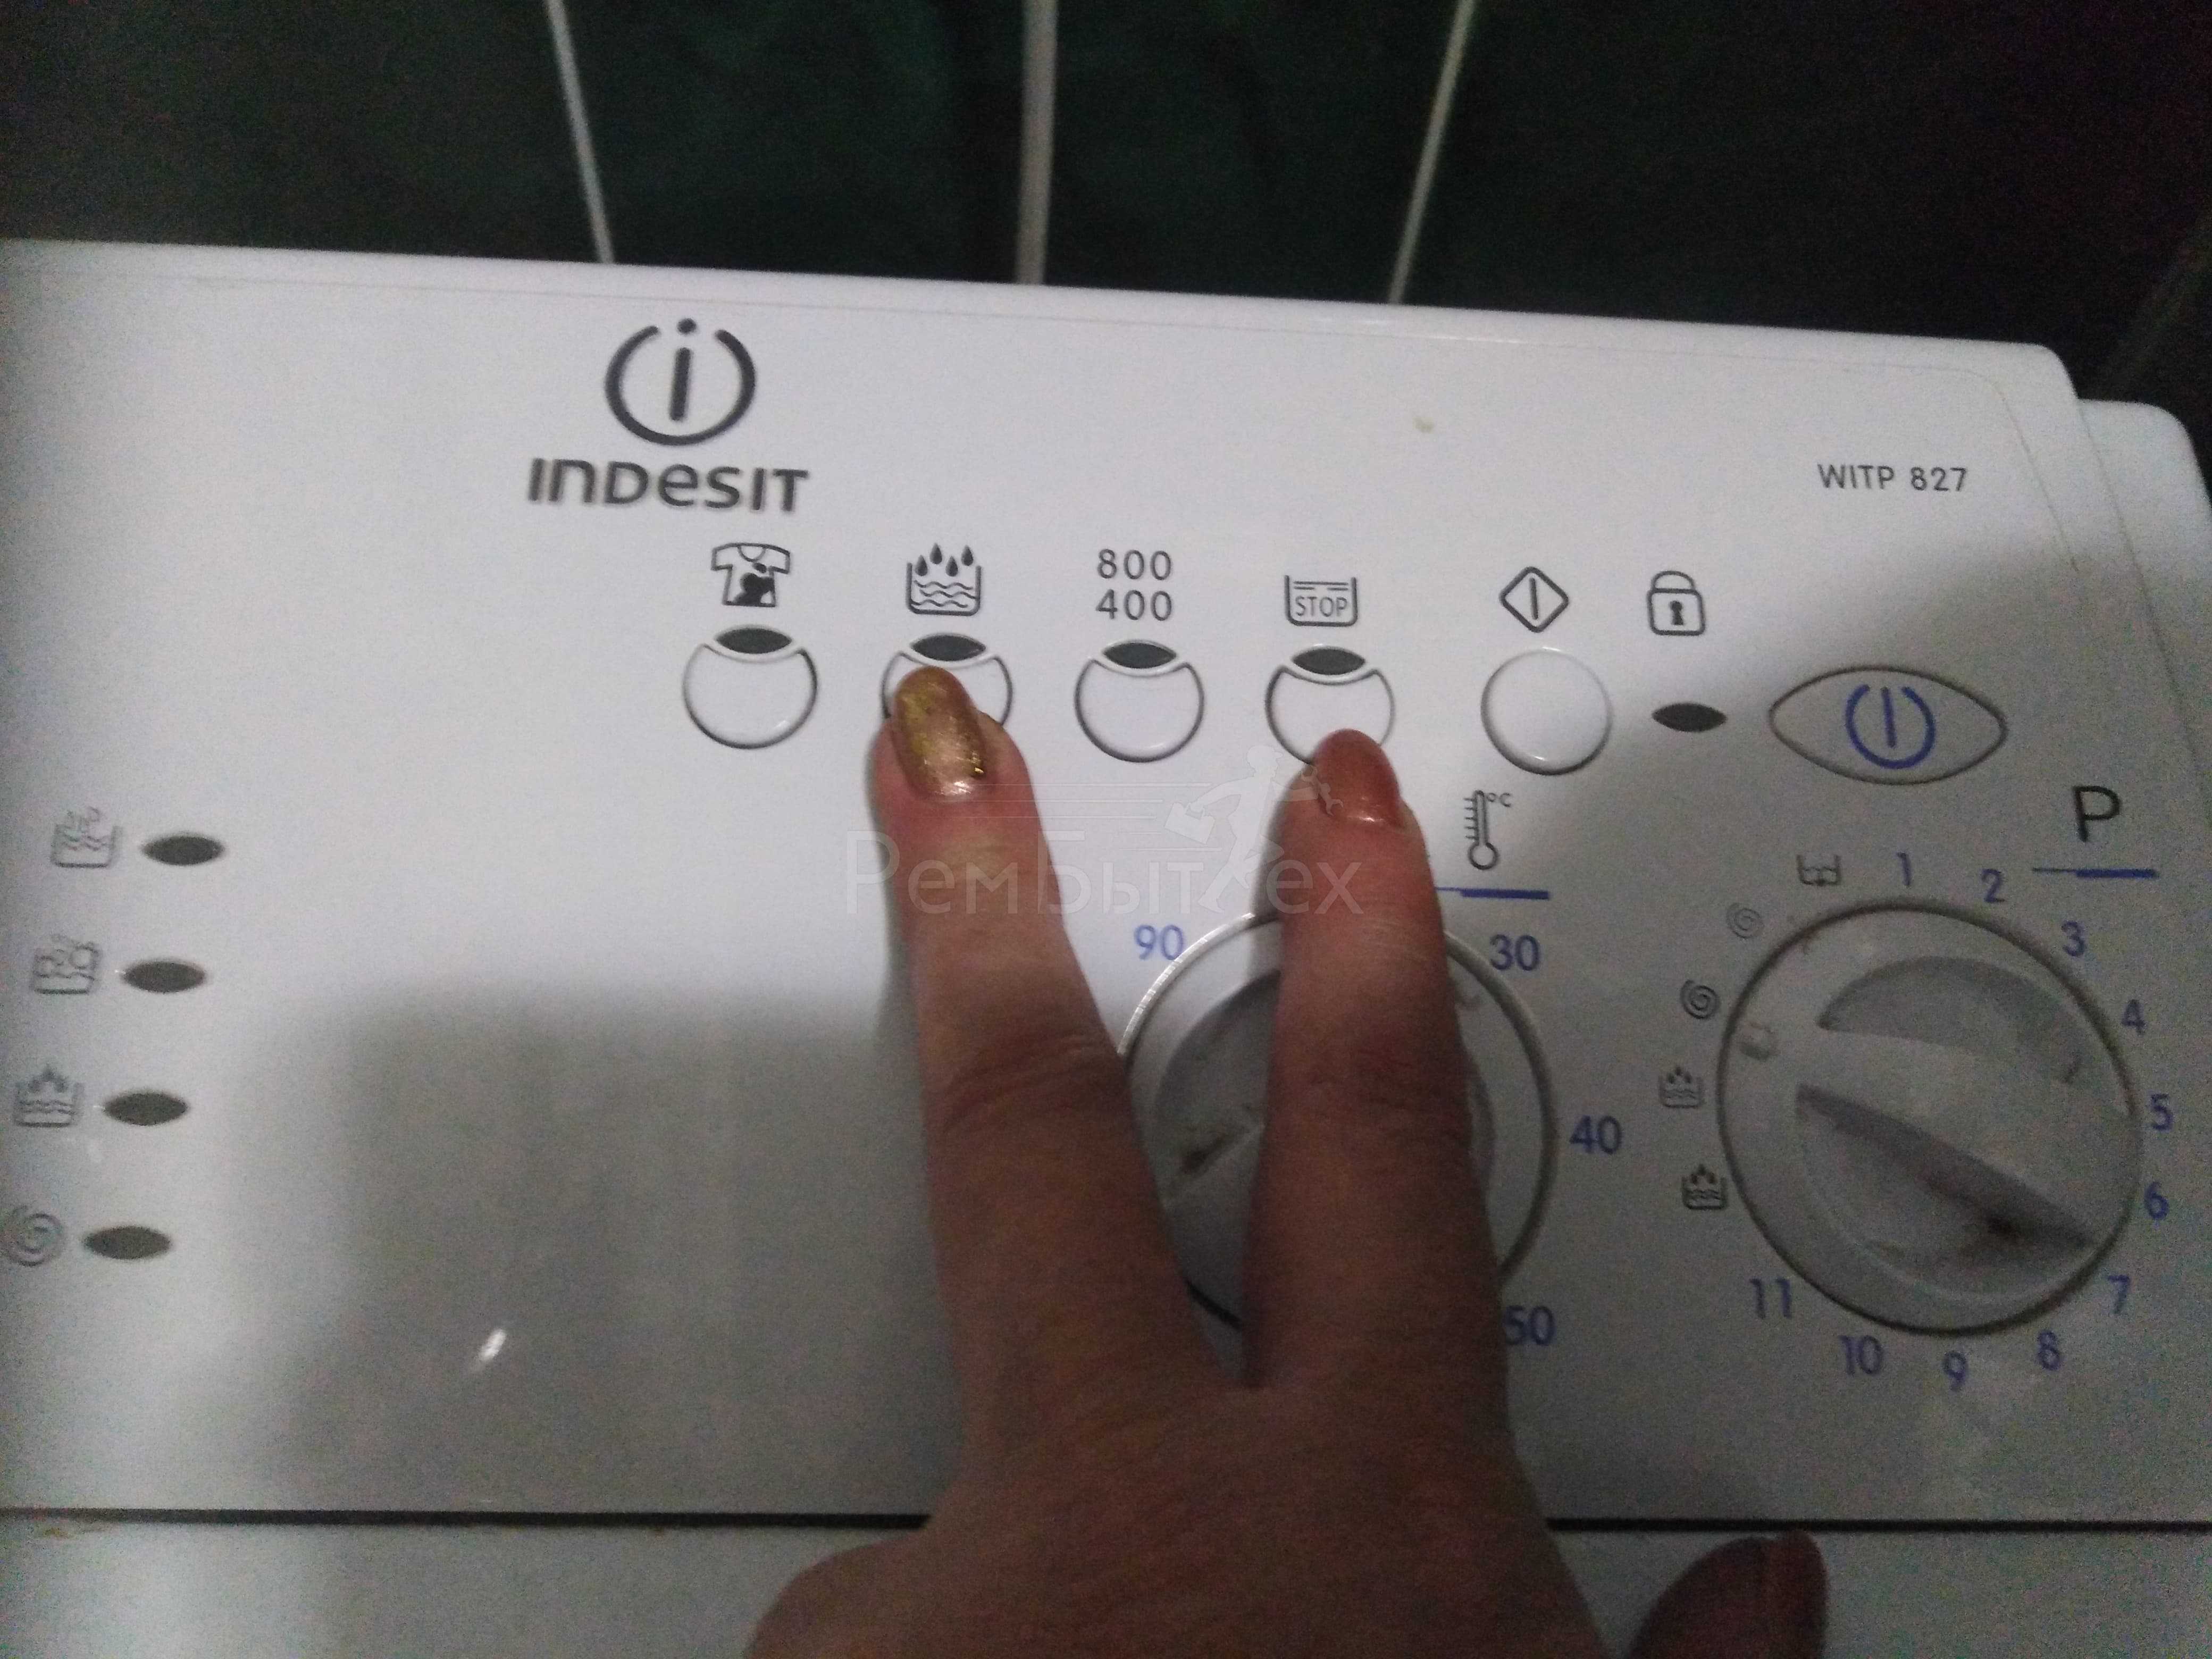 Ошибка oe (0e) стиральной машины lg: что делать и как устранить